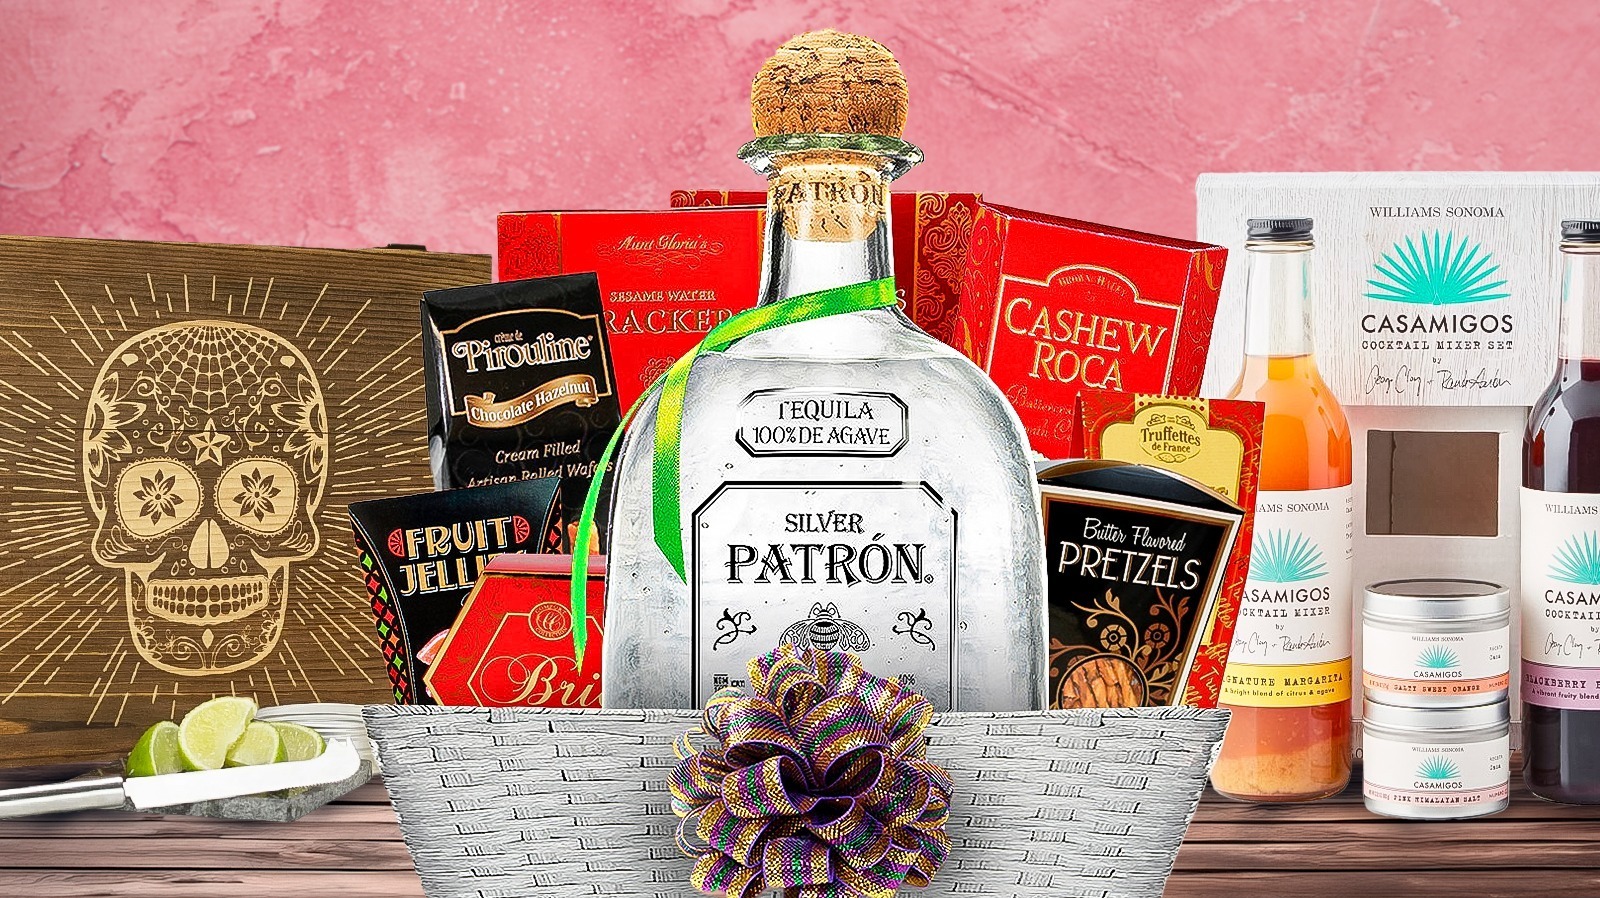 Casamigos Gift Basket, Casamigos Gift Set, Casamigos Tequila Gift